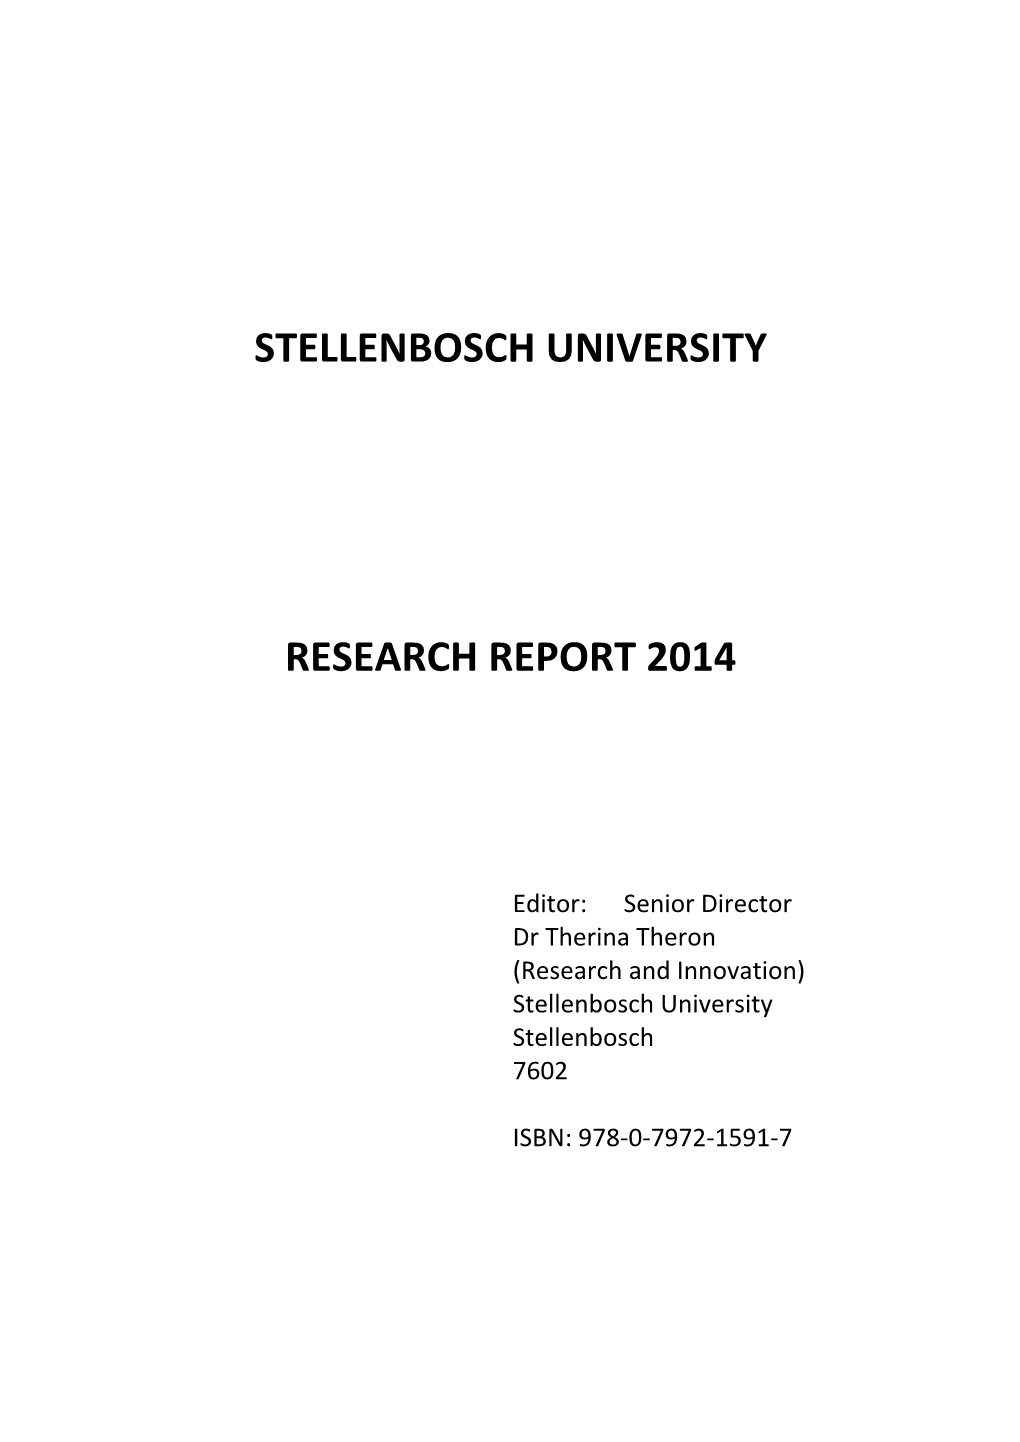 Stellenbosch University Research Report 2014